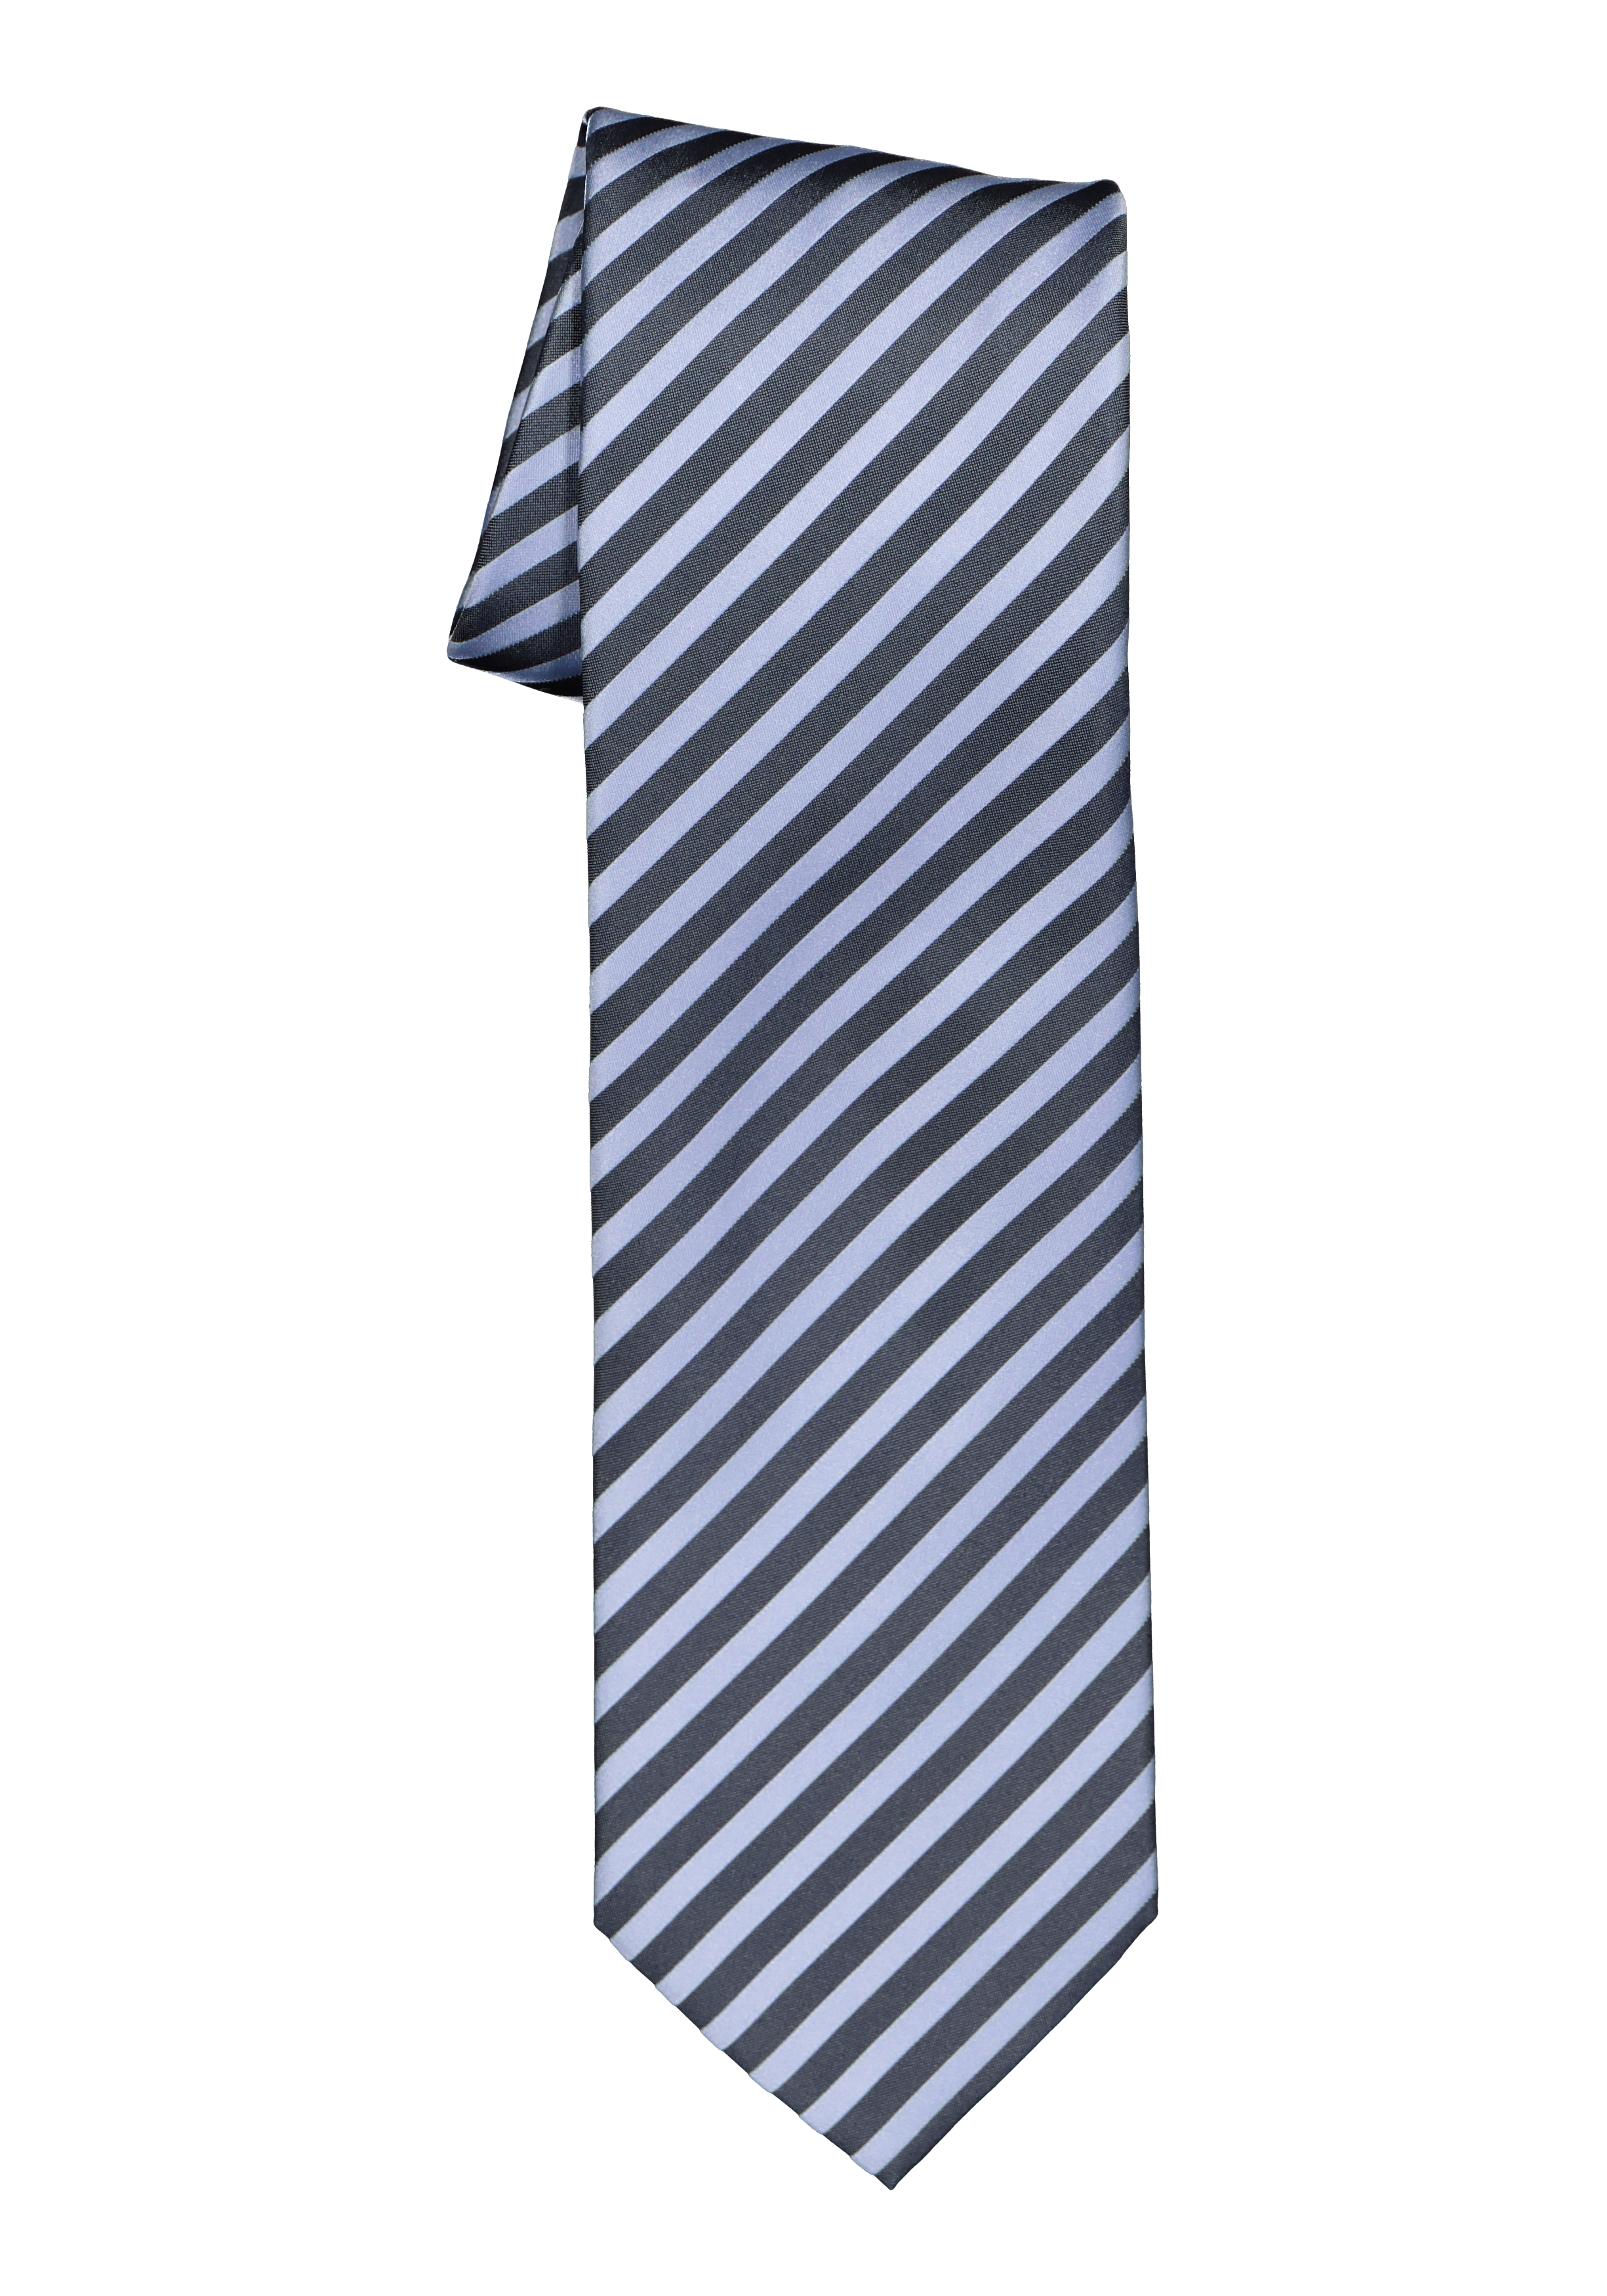 OLYMP stropdas, blauw-lichtblauw gestreept    